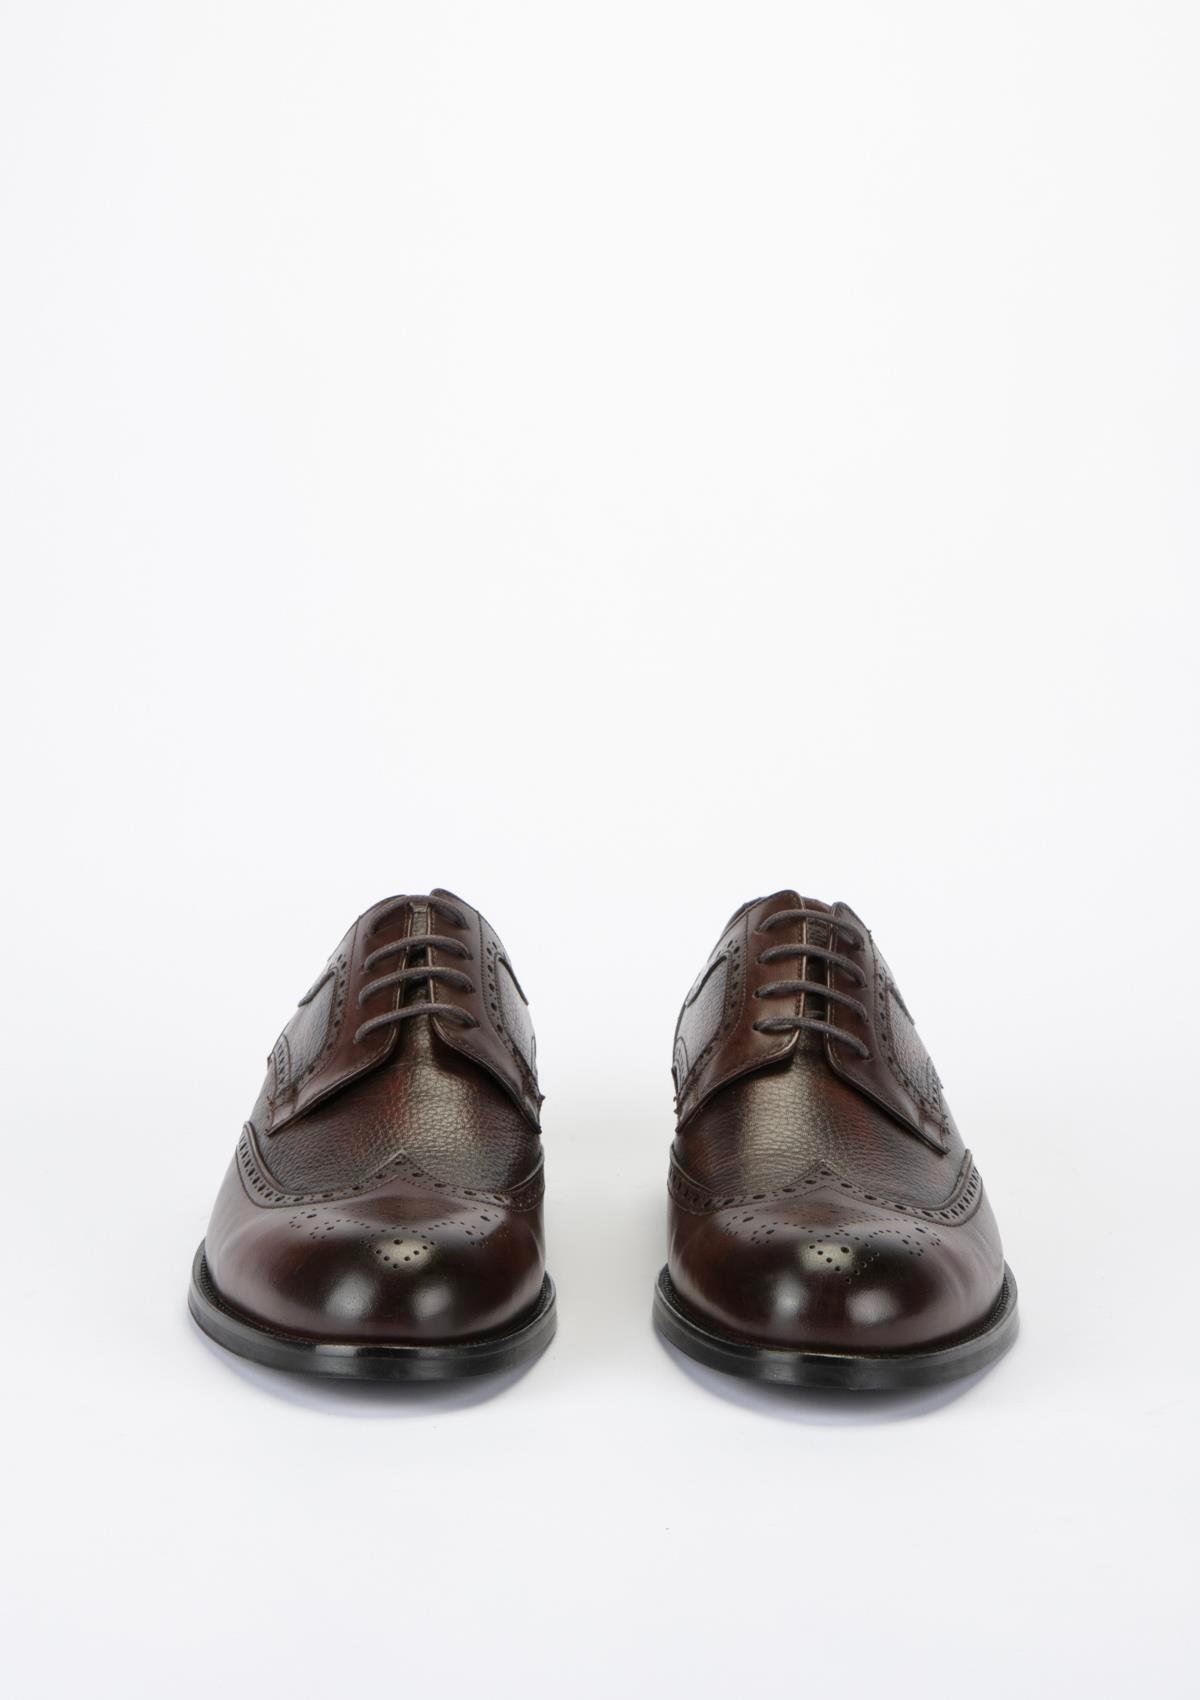 Yeşil Kundura K17 325 Erkek Kahverengi Deri Ayakkabı Fiyatı - Nee Marka